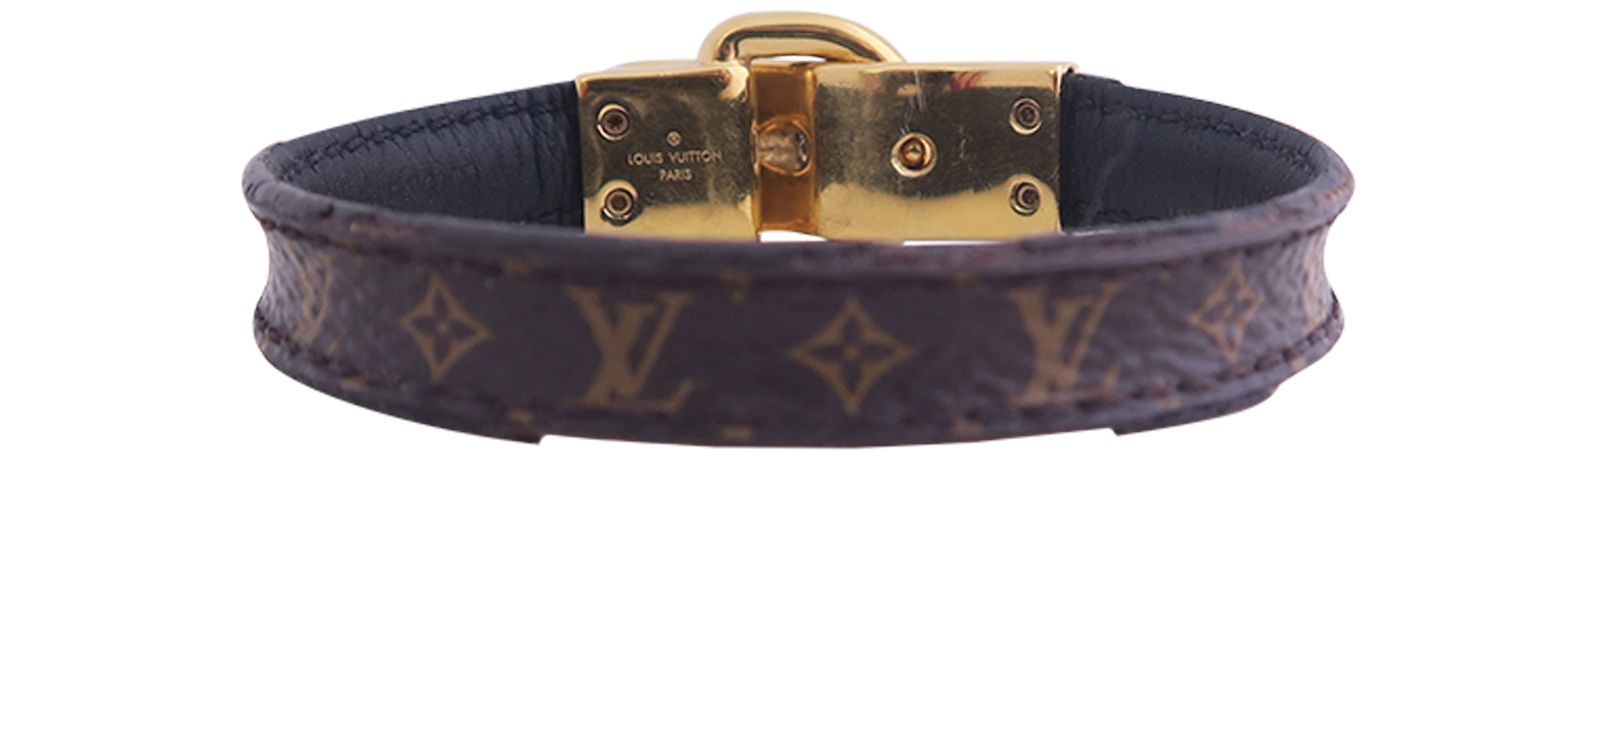 Louis Vuitton Fasten Your Lv Bracelet